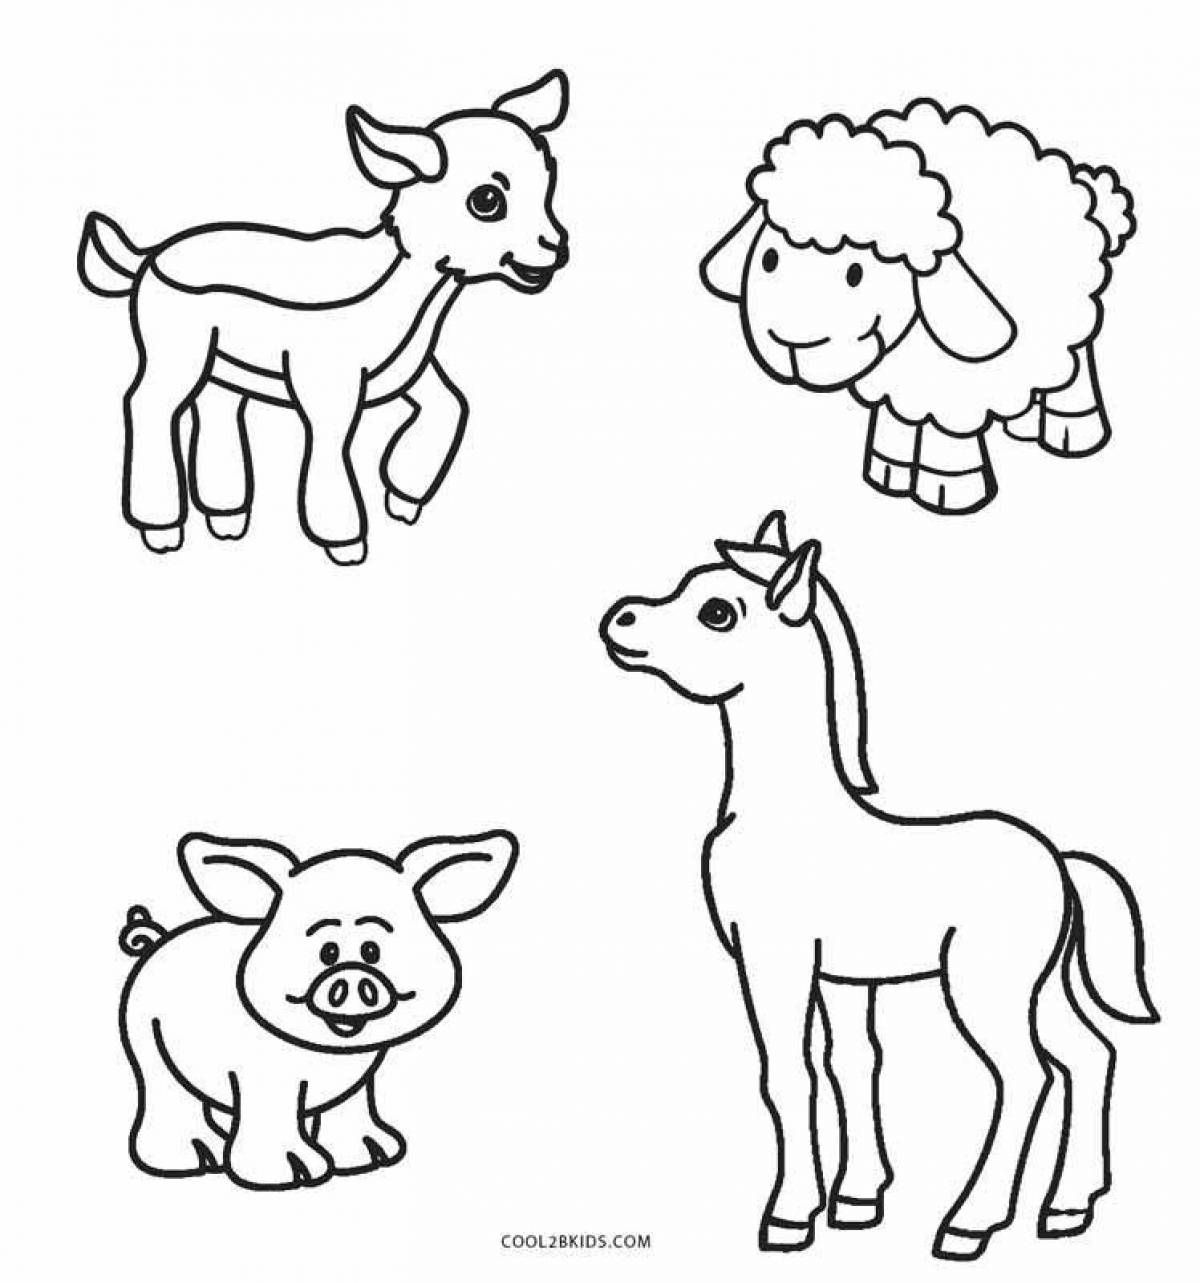 Картинки - раскраски животных. Распечатайте или скачайте онлайн!